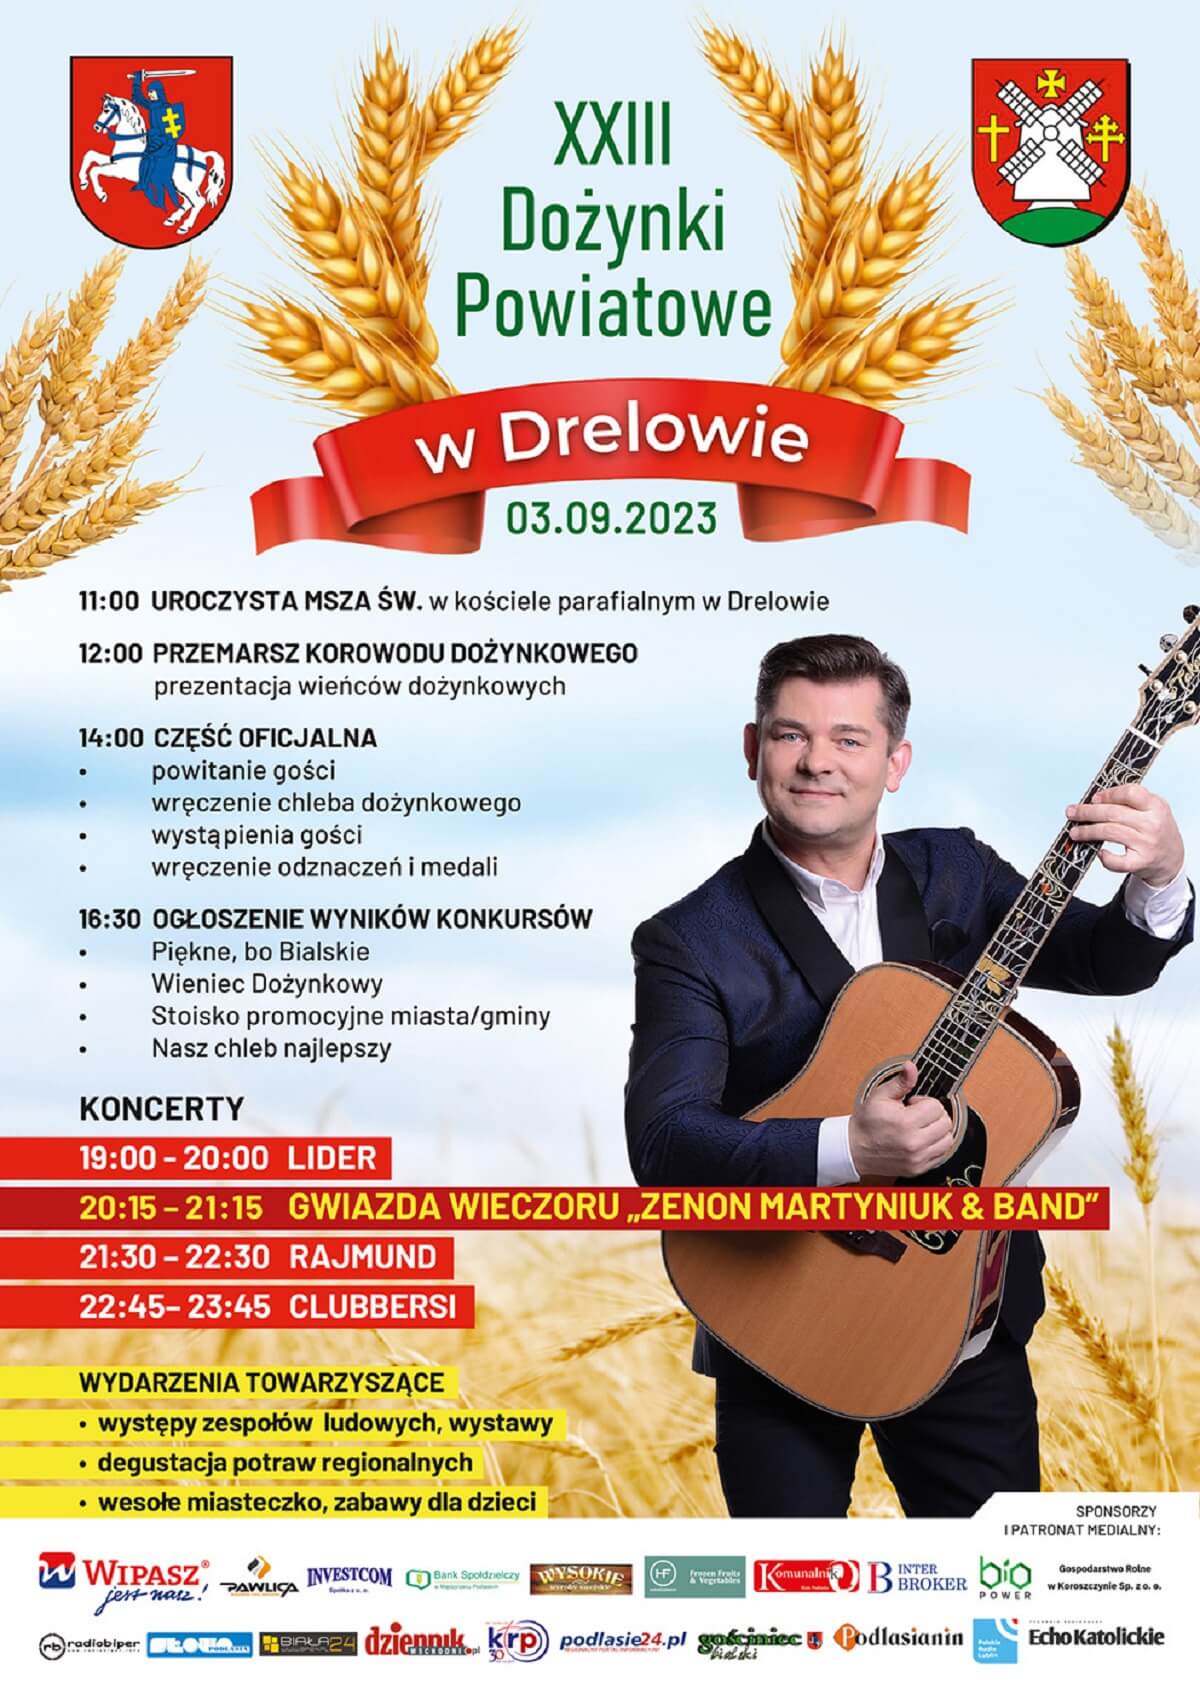 Dożynki powiatu bialskiego w Drelowie 2023 - plakat, program wydarzenia